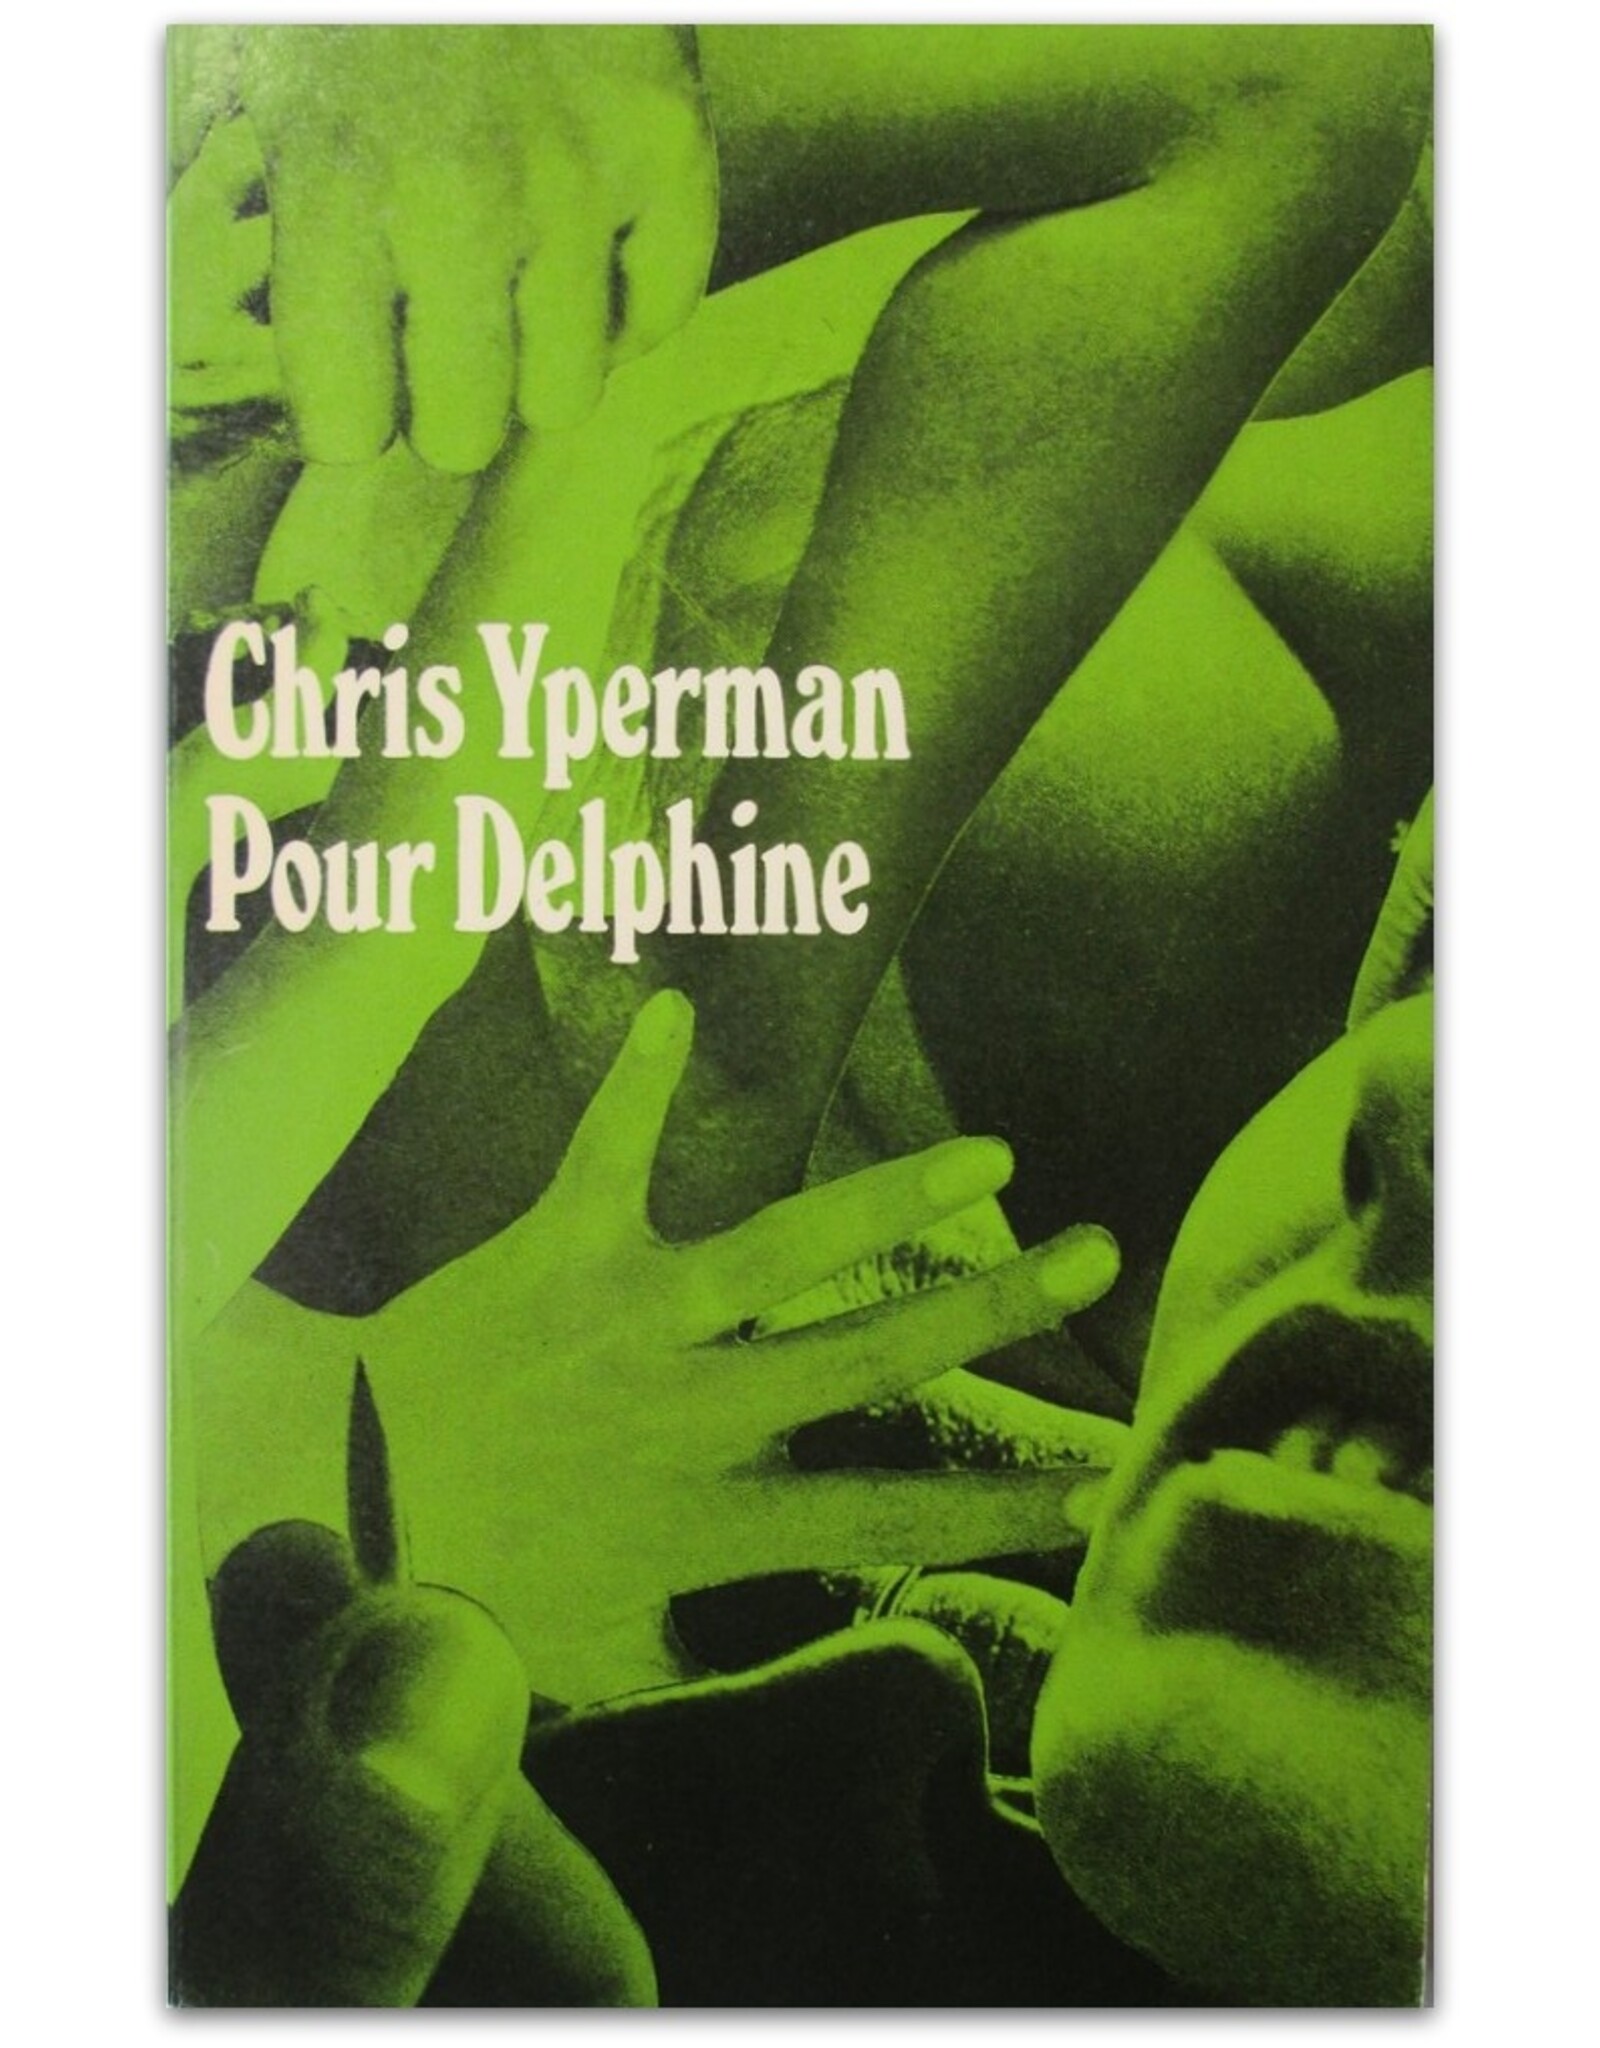 Chris Yperman - Pour Delphine